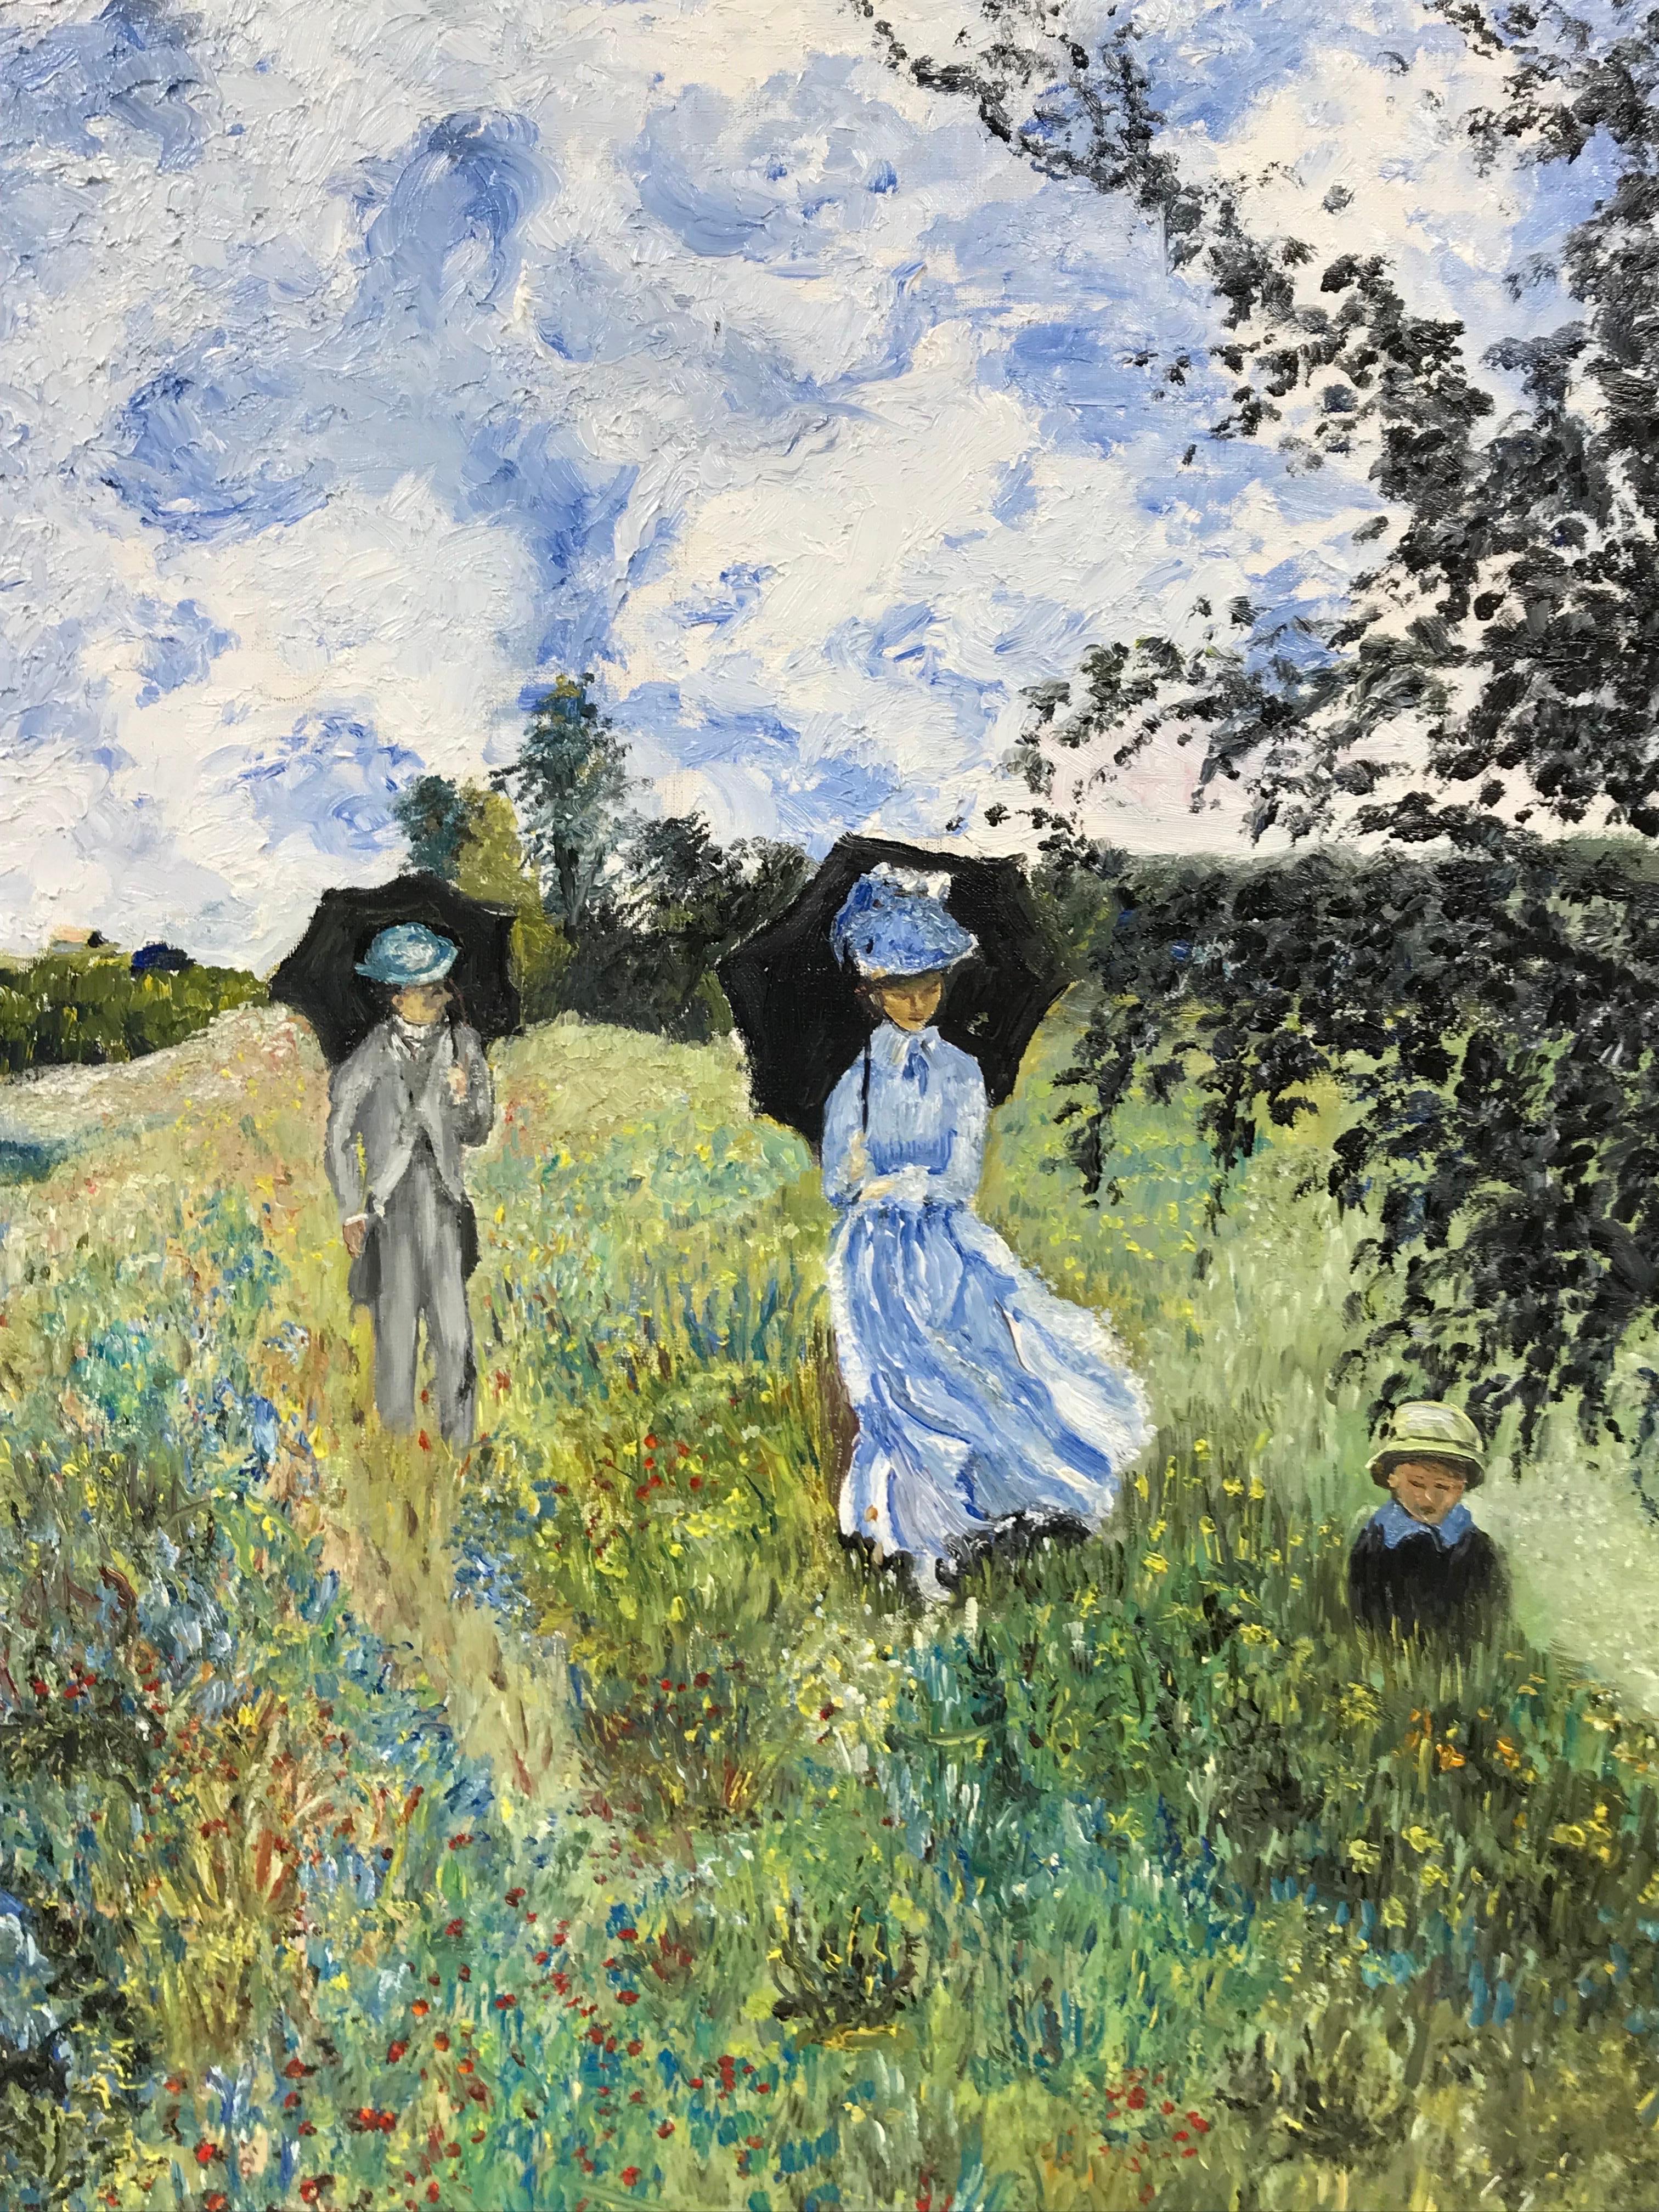 Künstler/Schule: Französische Schule, 20. Jahrhundert, nach dem Vorbild von Claude Monet

Titel: Impressionistische Ansicht einer eleganten Familie auf einer Wiese

Medium: Öl auf Leinwand, ungerahmt

Leinwand: 18 x 24 Zoll

Provenienz: